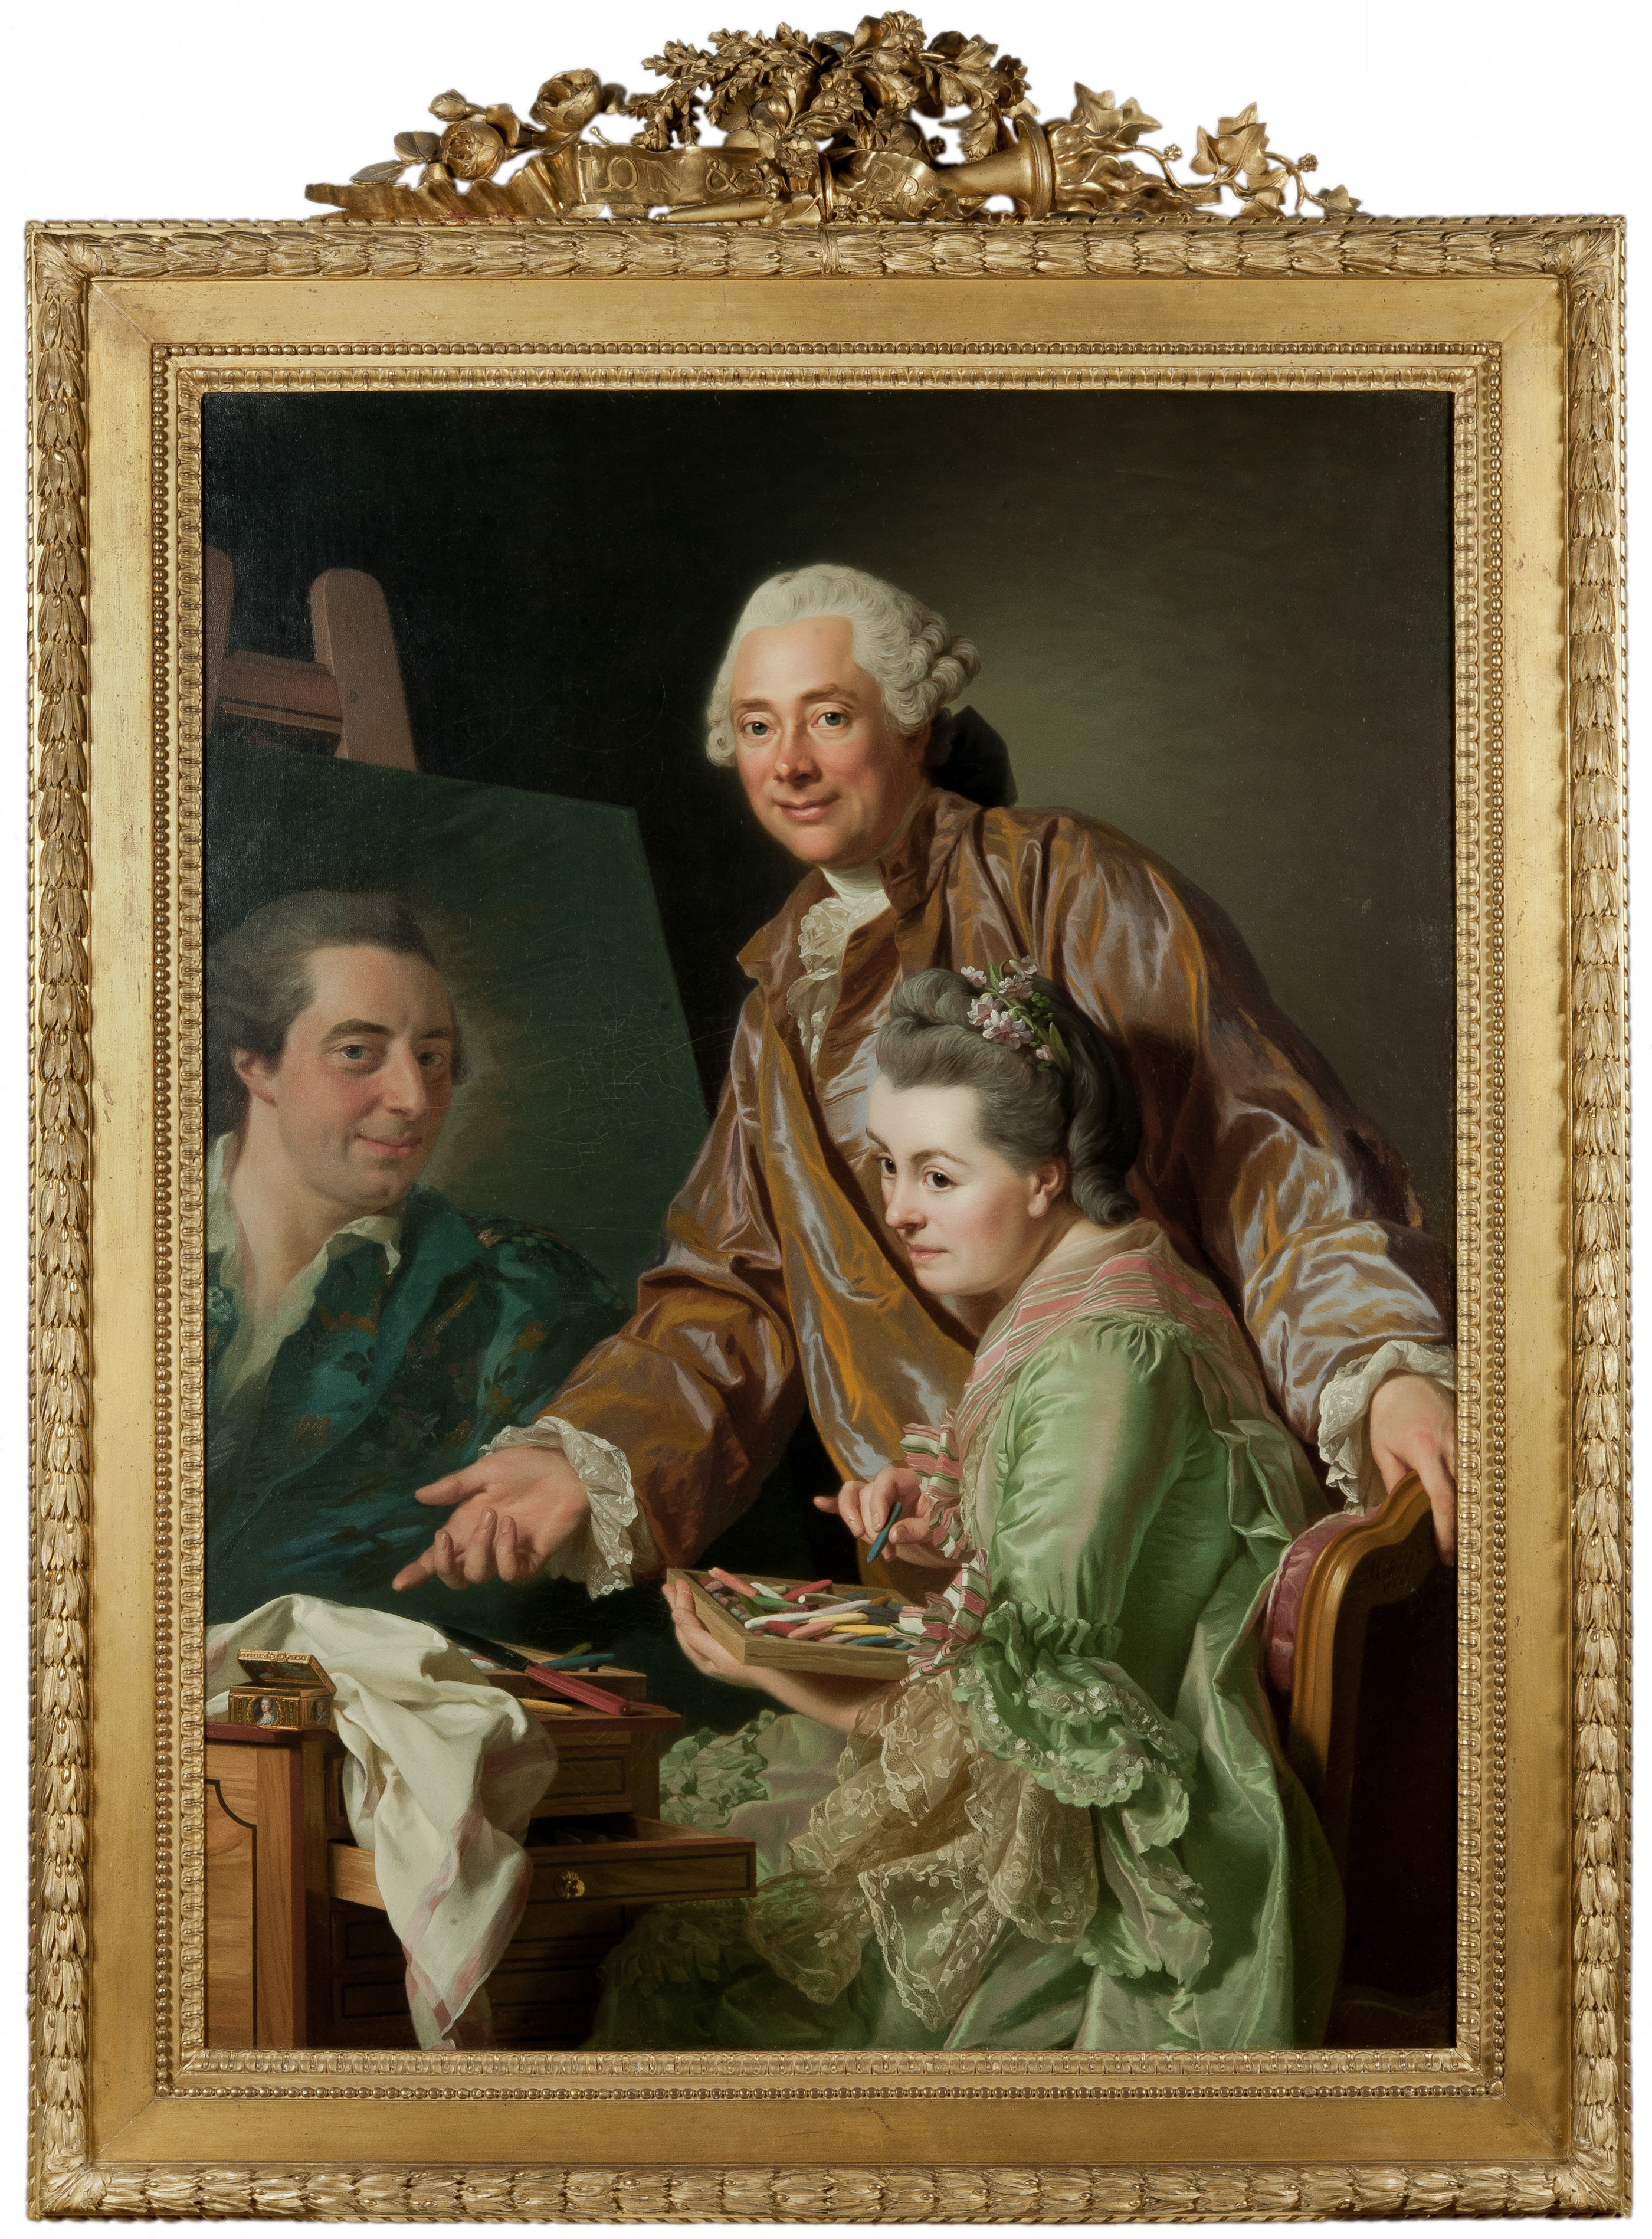 藝術家和他的妻子瑪麗·蘇珊娜·吉魯斯特畫亨裏克·威廉·佩爾的肖像 by Alexander Roslin - 1767 - 131 x 98,5 cm 